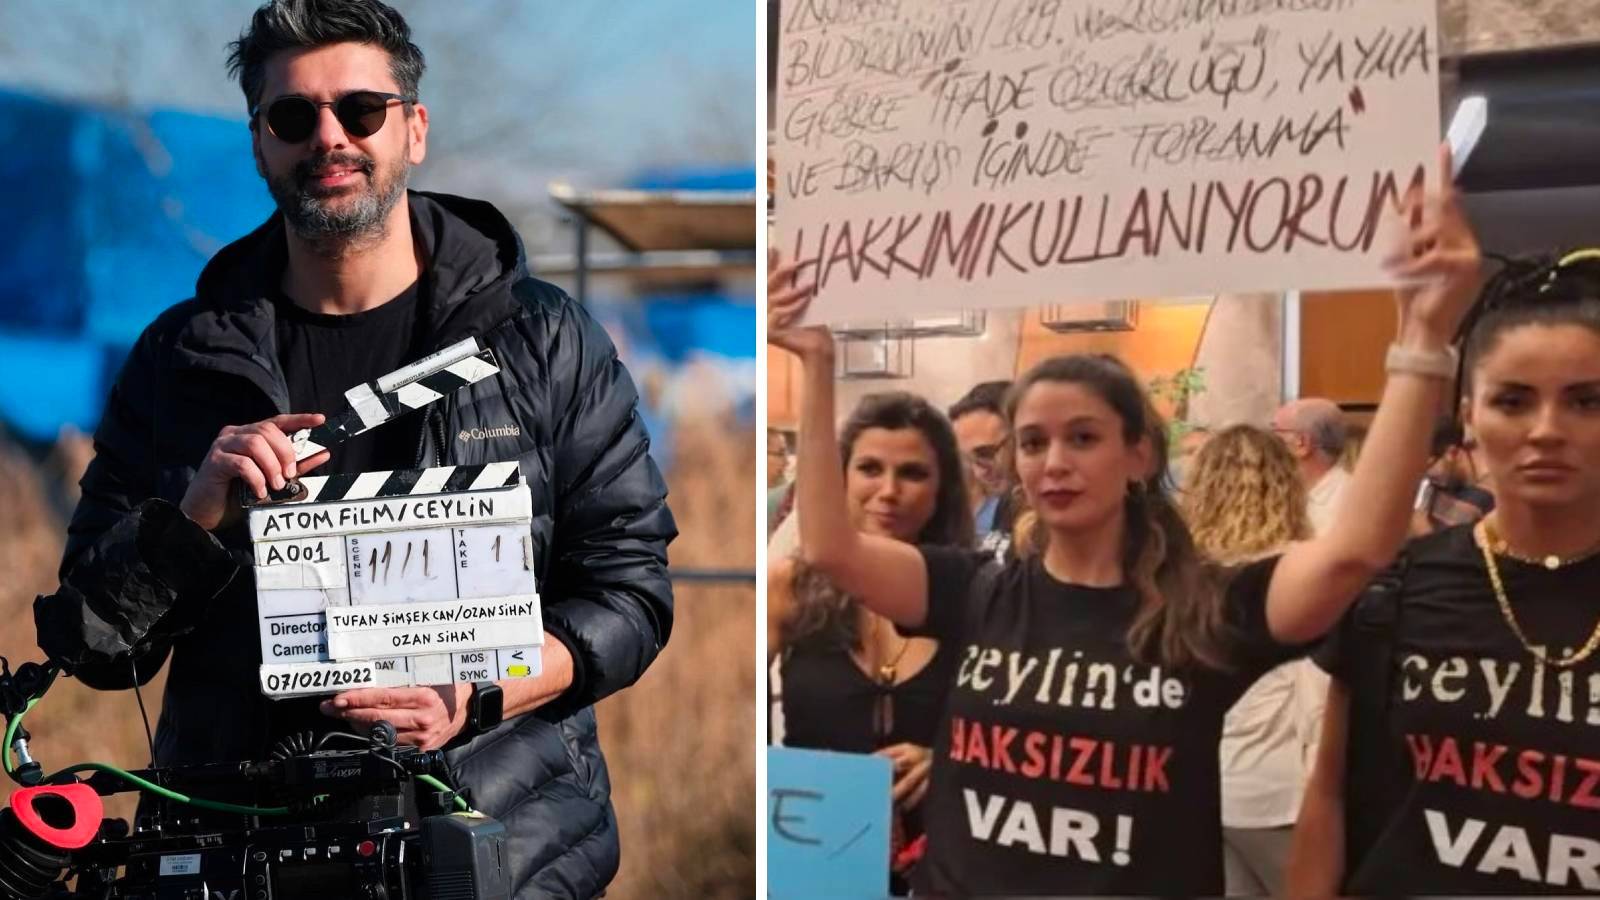 Altın Koza’da sinema protestosu: "Ceylin'de haksızlık var"